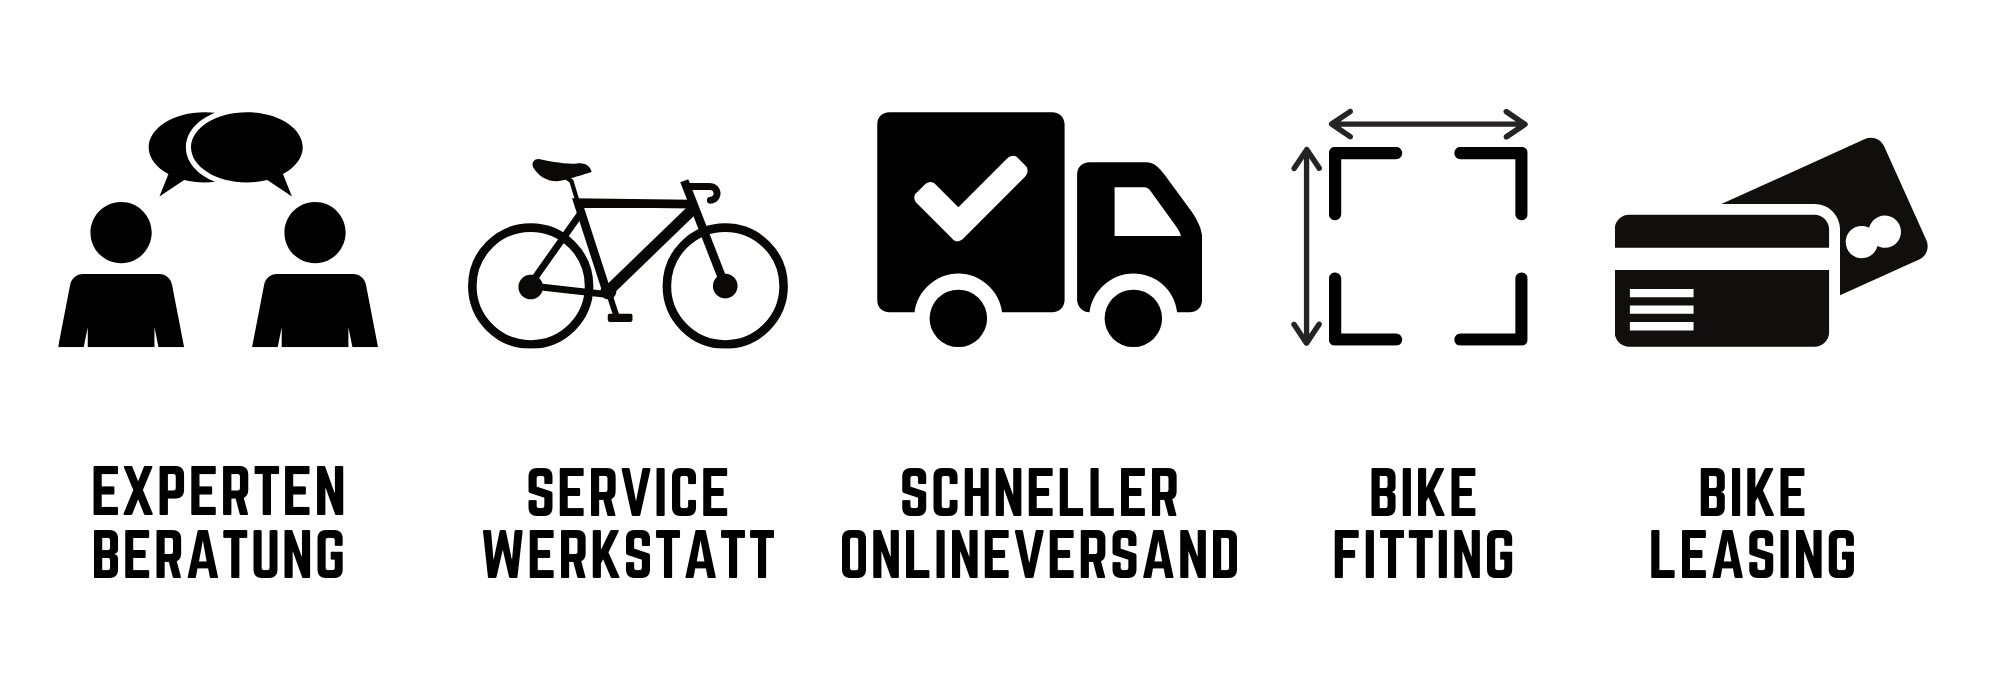 Icons-Vorteile-Wohlleben-Bikewelt